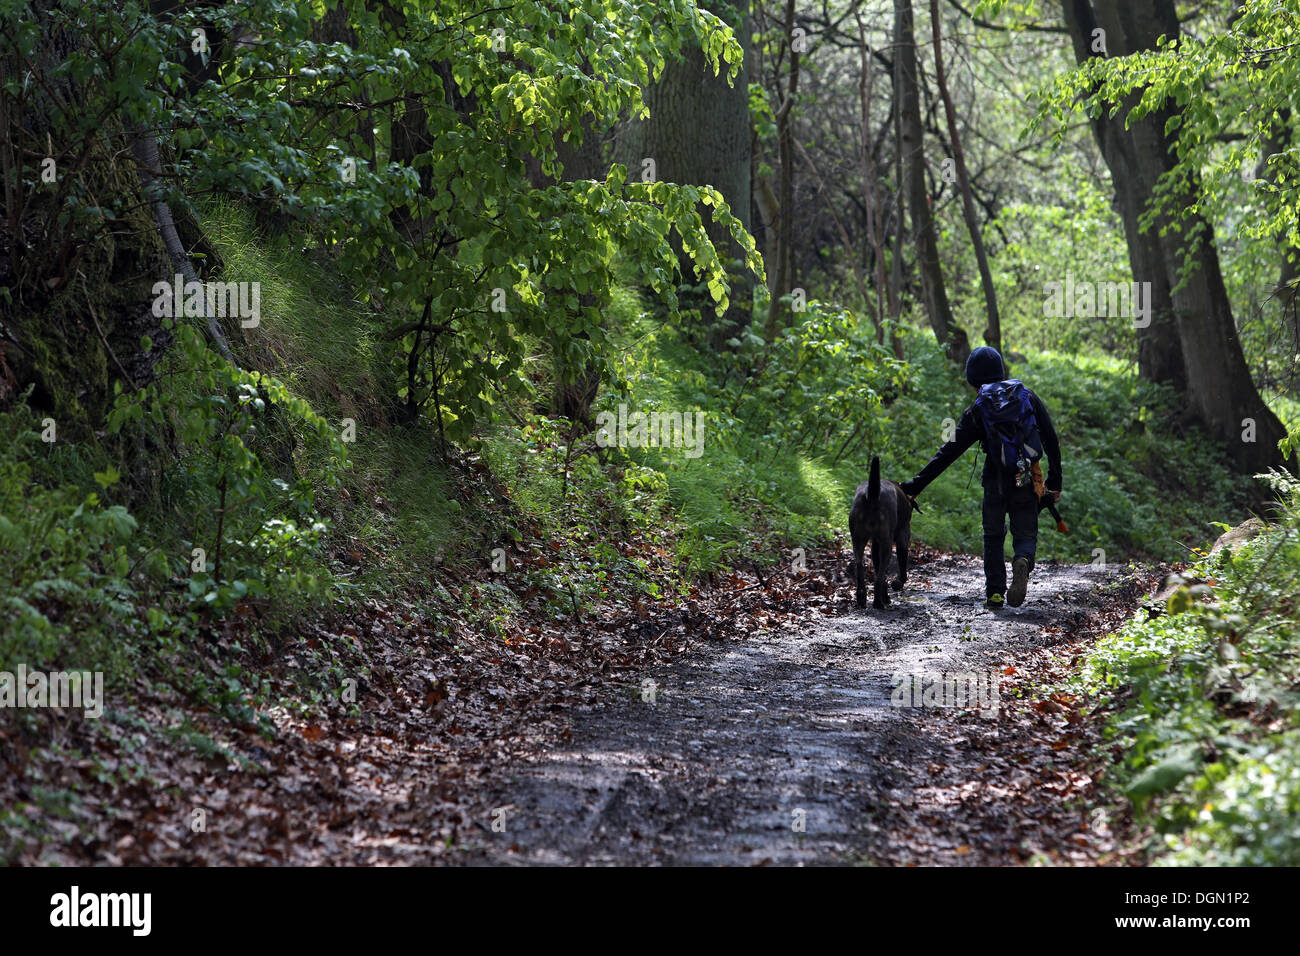 Nouveau Kätwin, Allemagne, Garçon avec un chien court à travers une forêt Banque D'Images